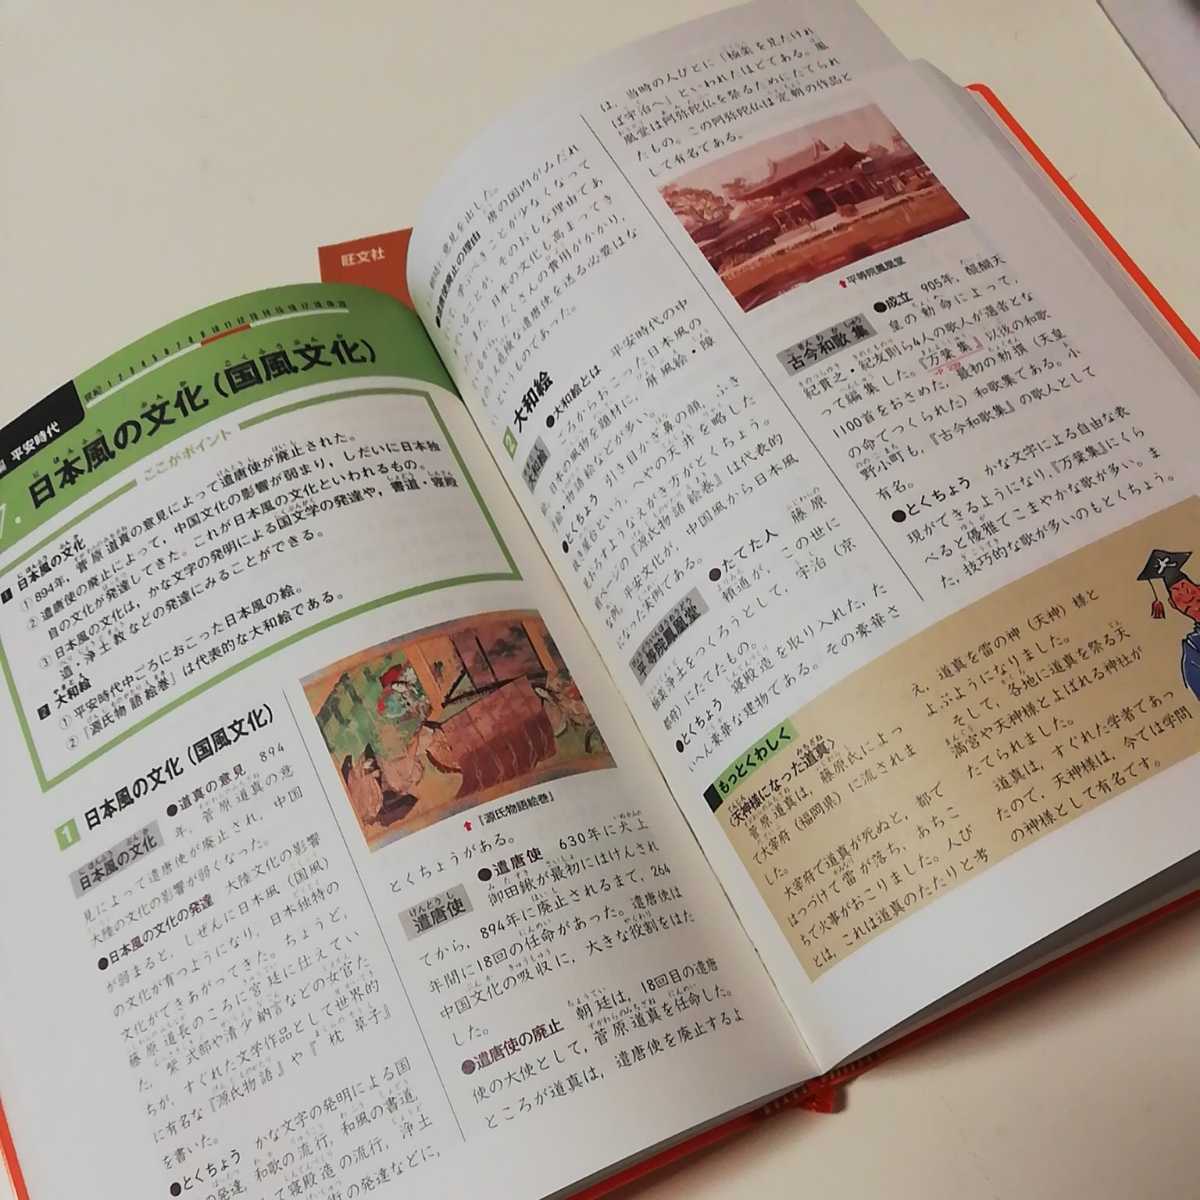 . документ фирма начальная школа общественная наука лексика обычная цена 2500 иен + налог справочник японский ... год таблица имеется 